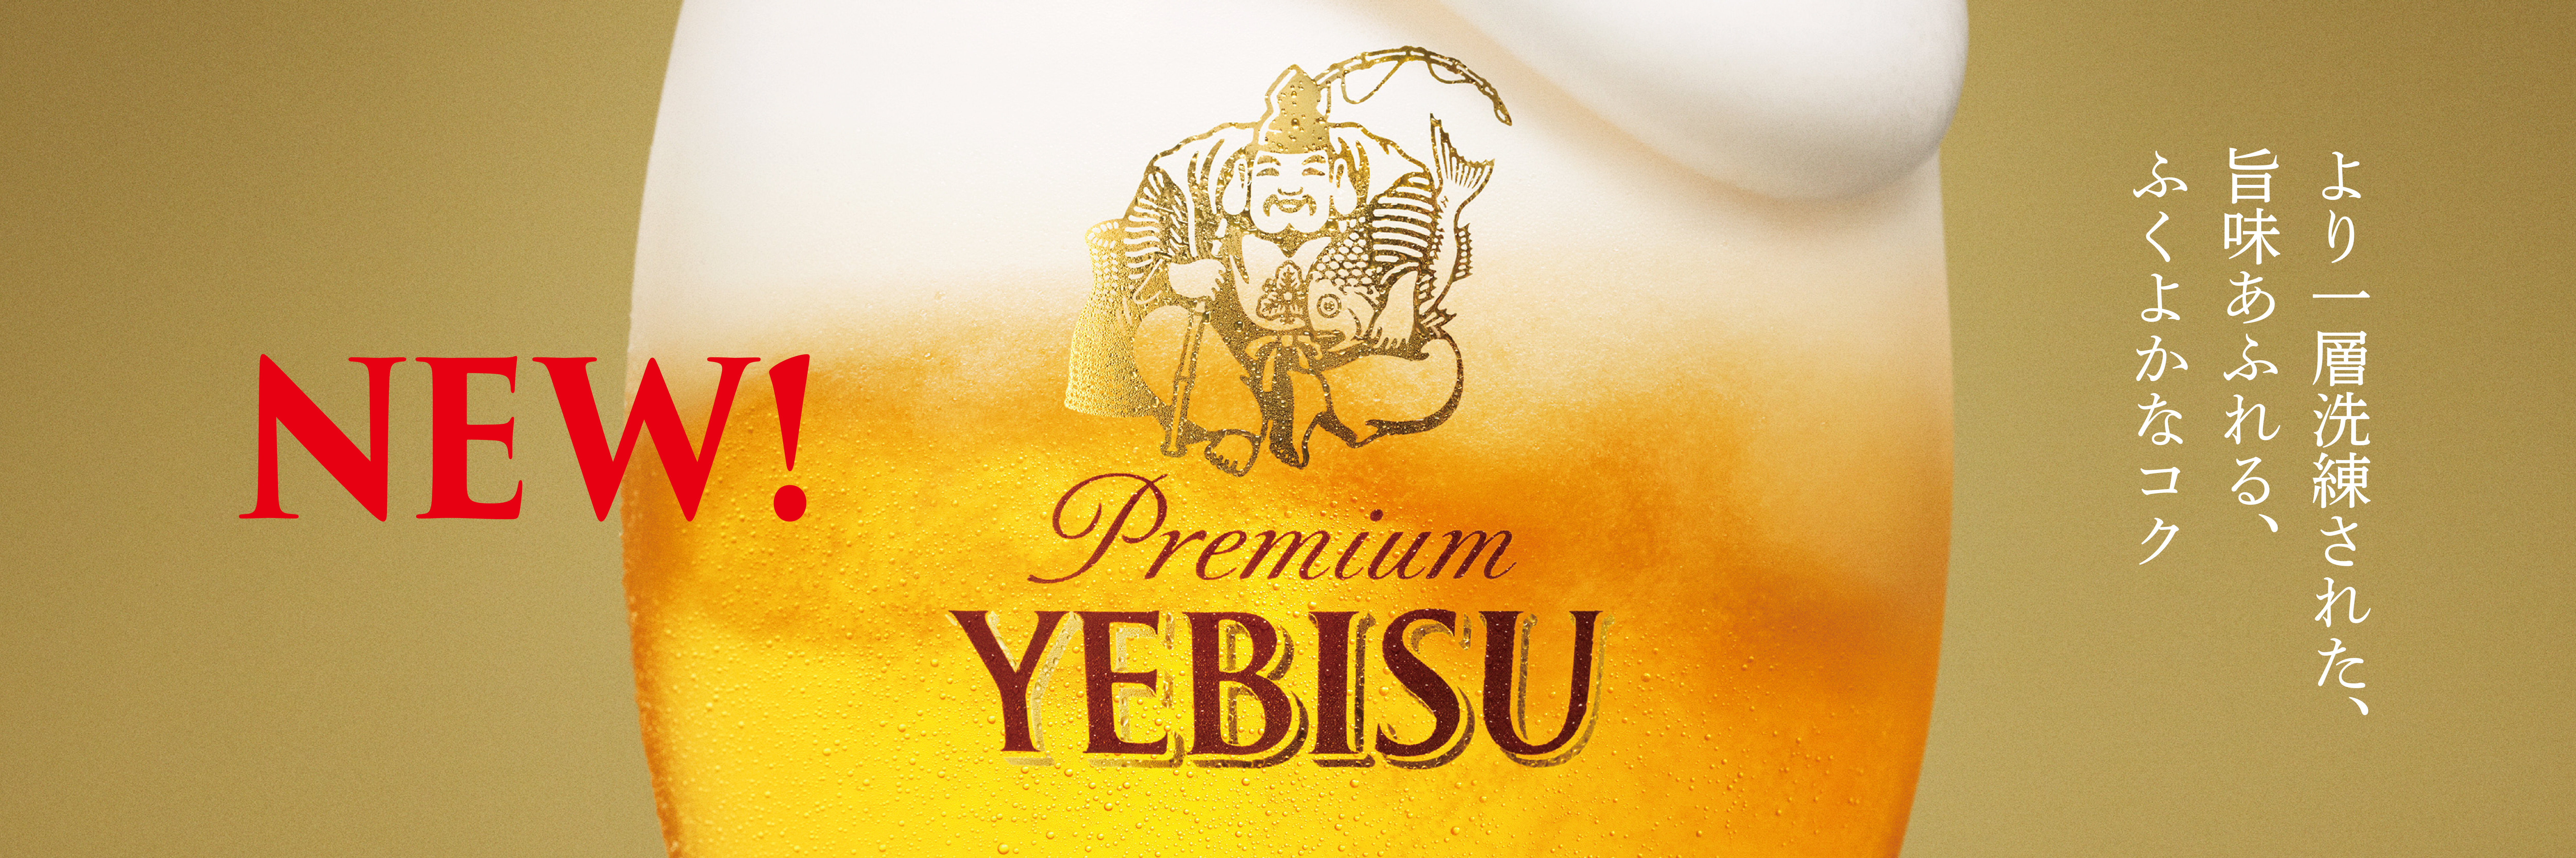 ヱビスビール8年ぶりのリニューアル | ニュースリリース | サッポロビール